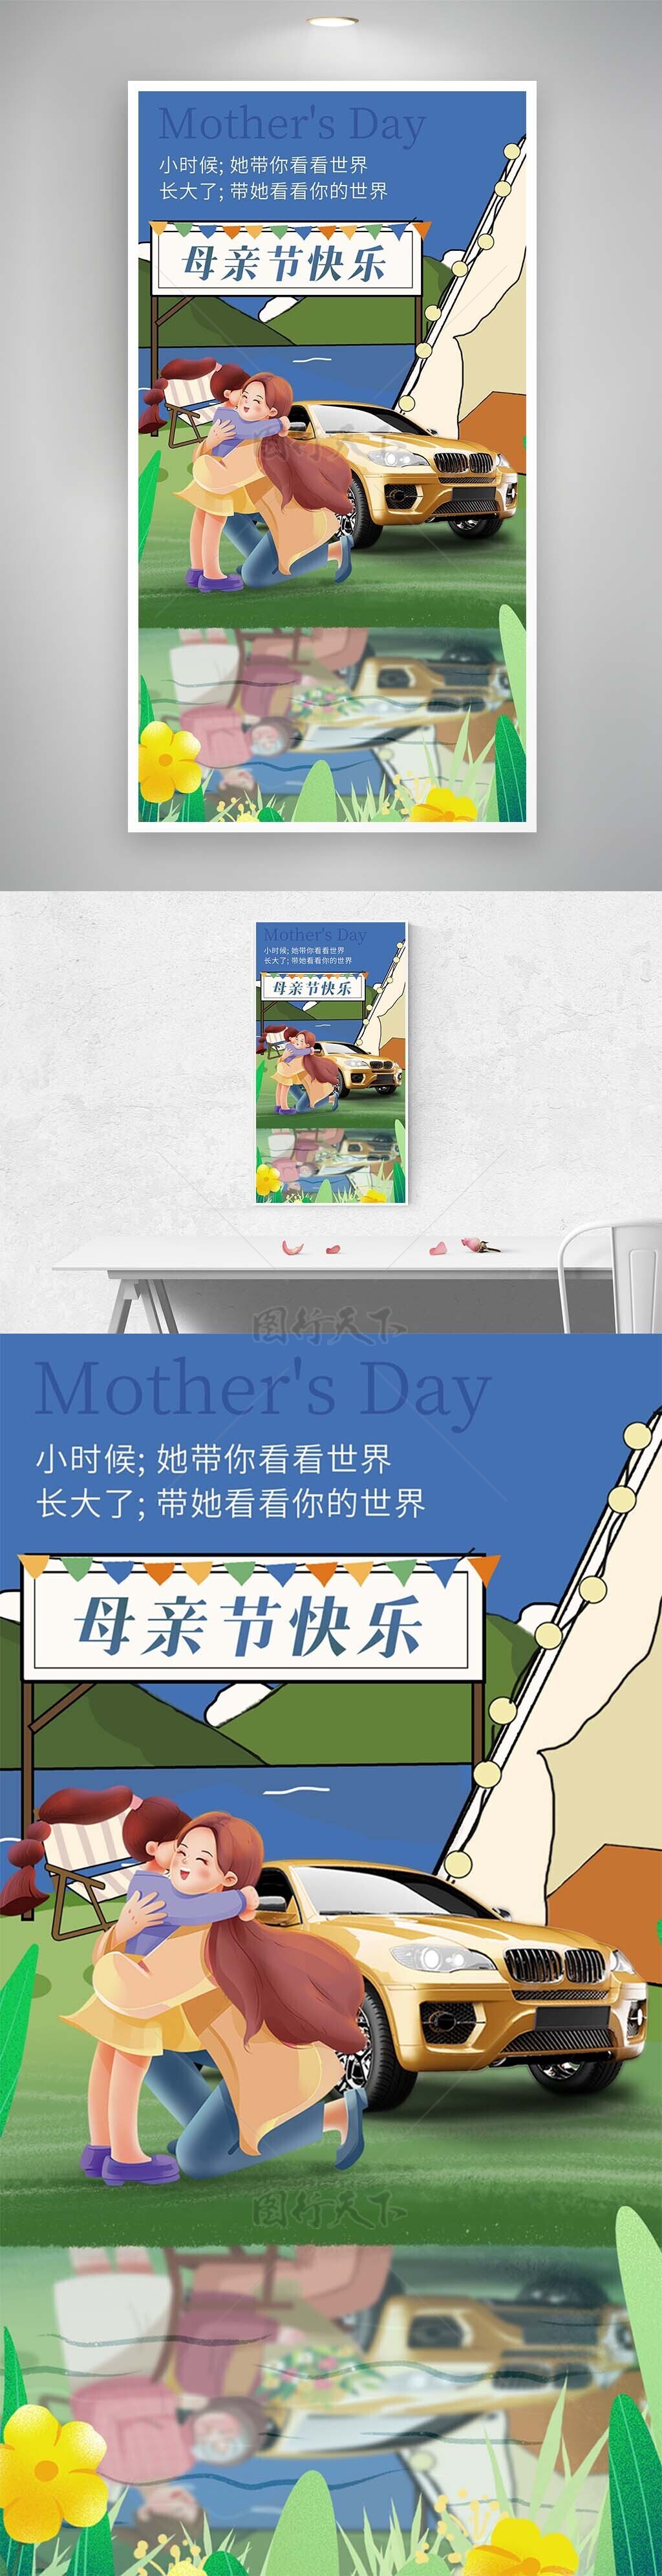 母亲节创意蓝色手绘温馨插画海报